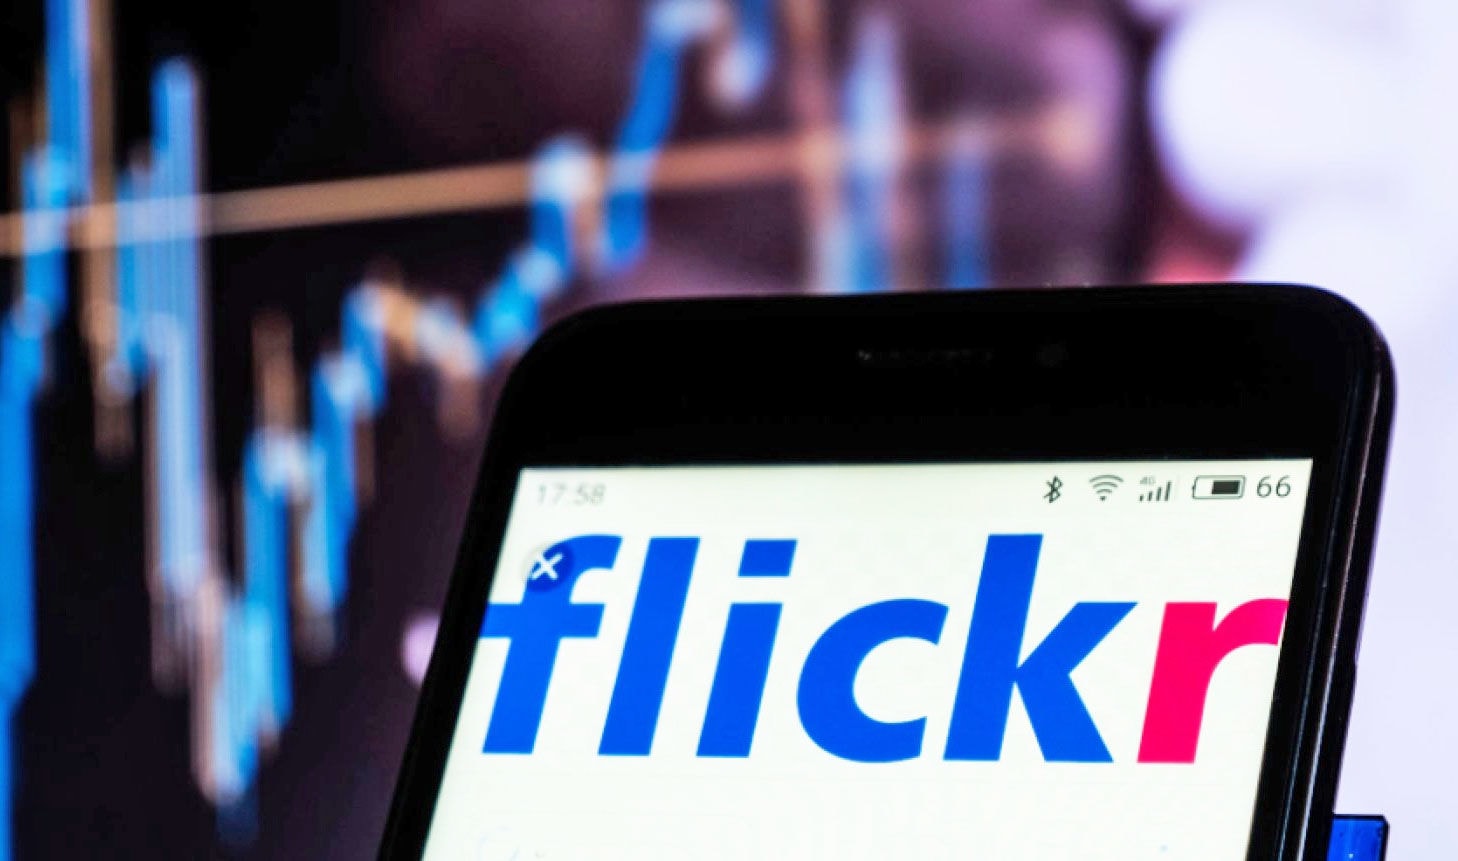 Flickr 無料プラン縮小を発表 容量1tbから1000点に 19年2月5日以降は超過分を削除 Engadget 日本版